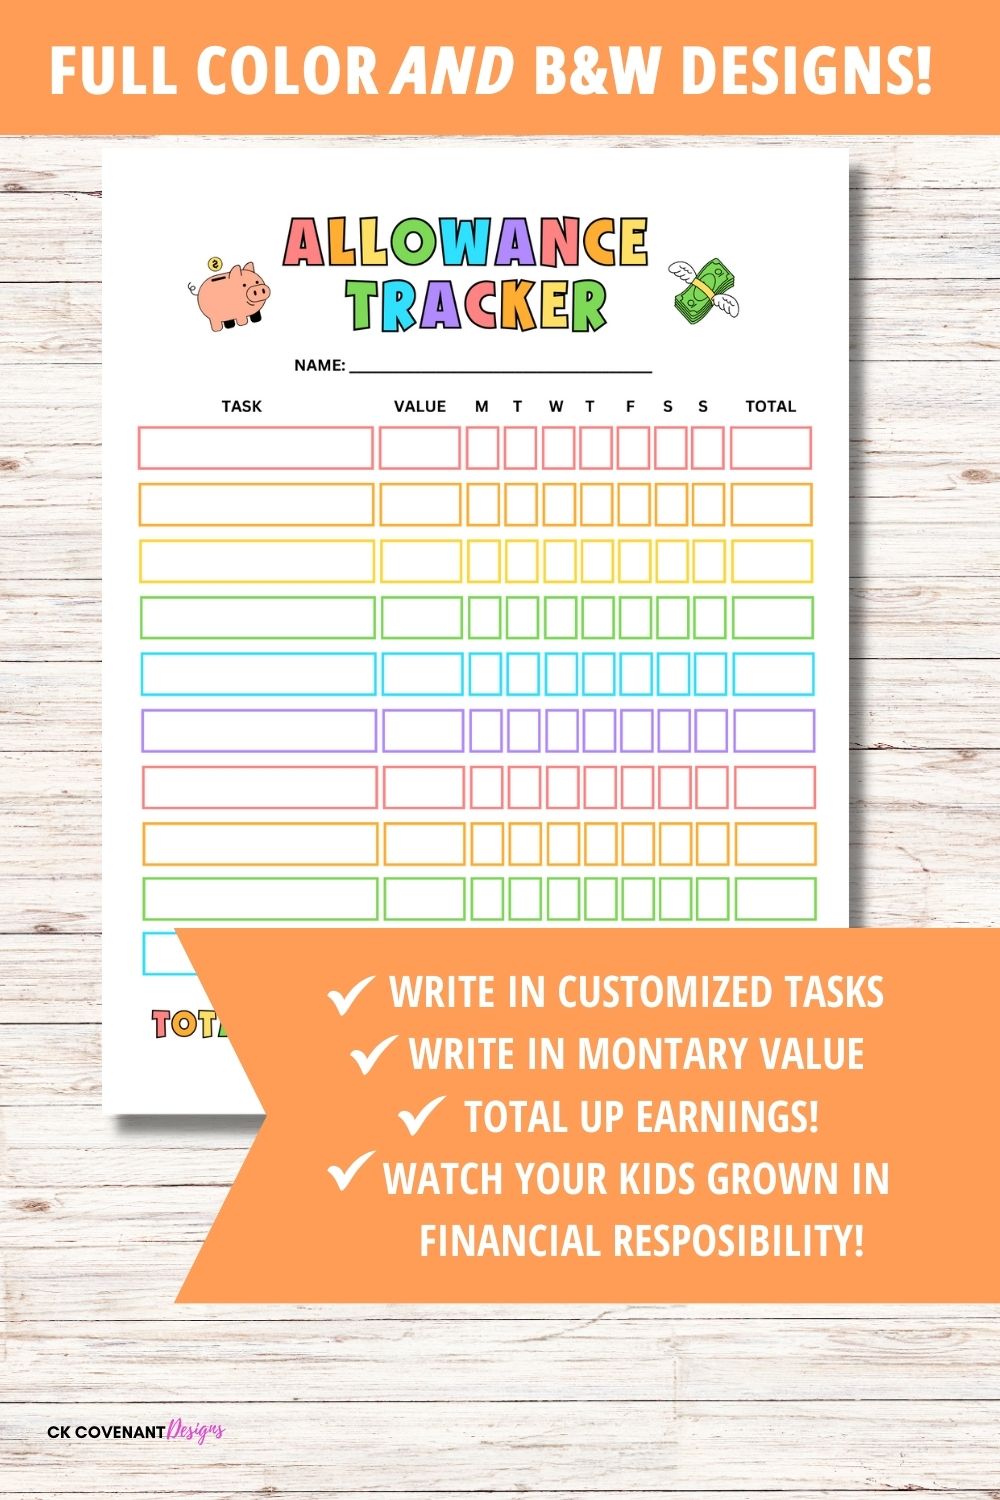 Allowance Tracker for Kids